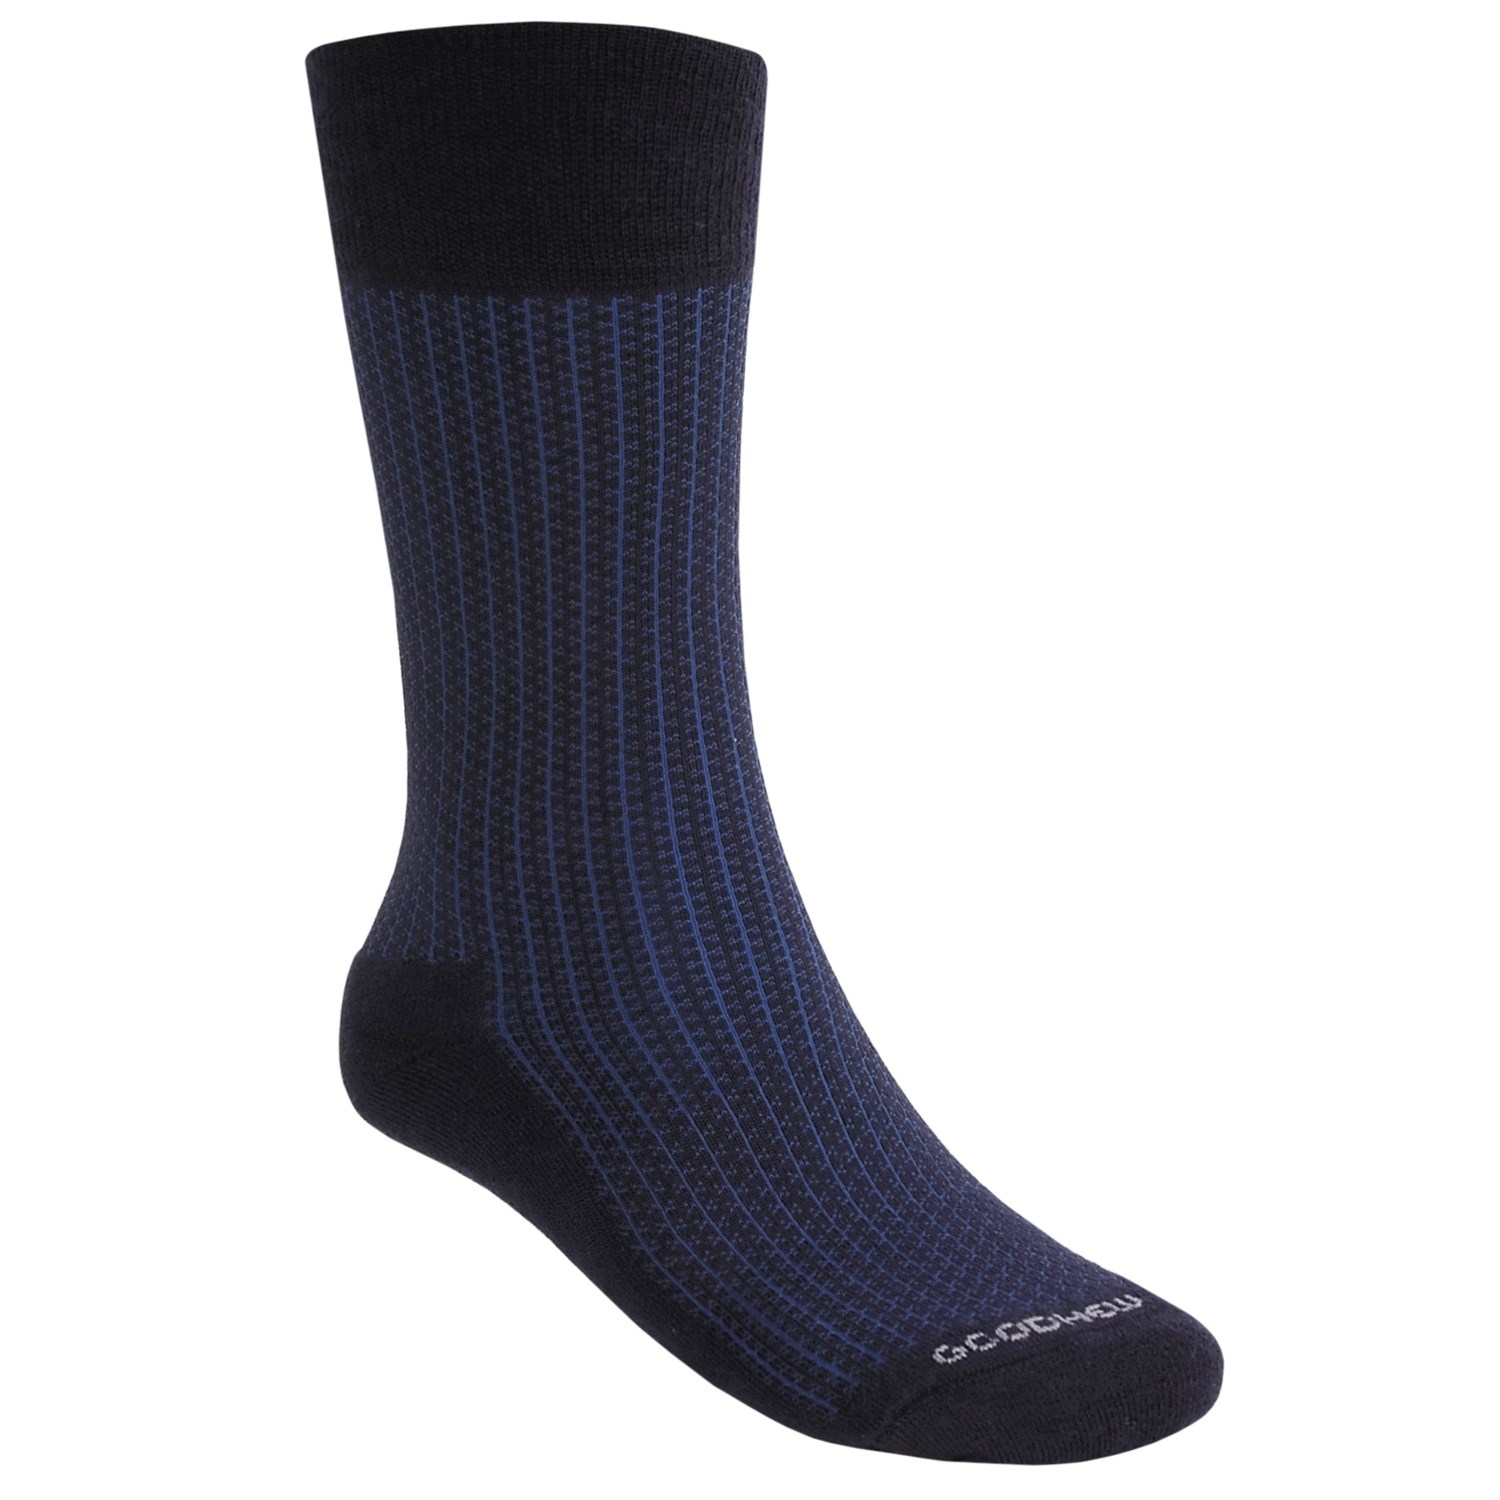 Goodhew Windsor Lightweight Socks (For Men) 2728Y - Save 40%